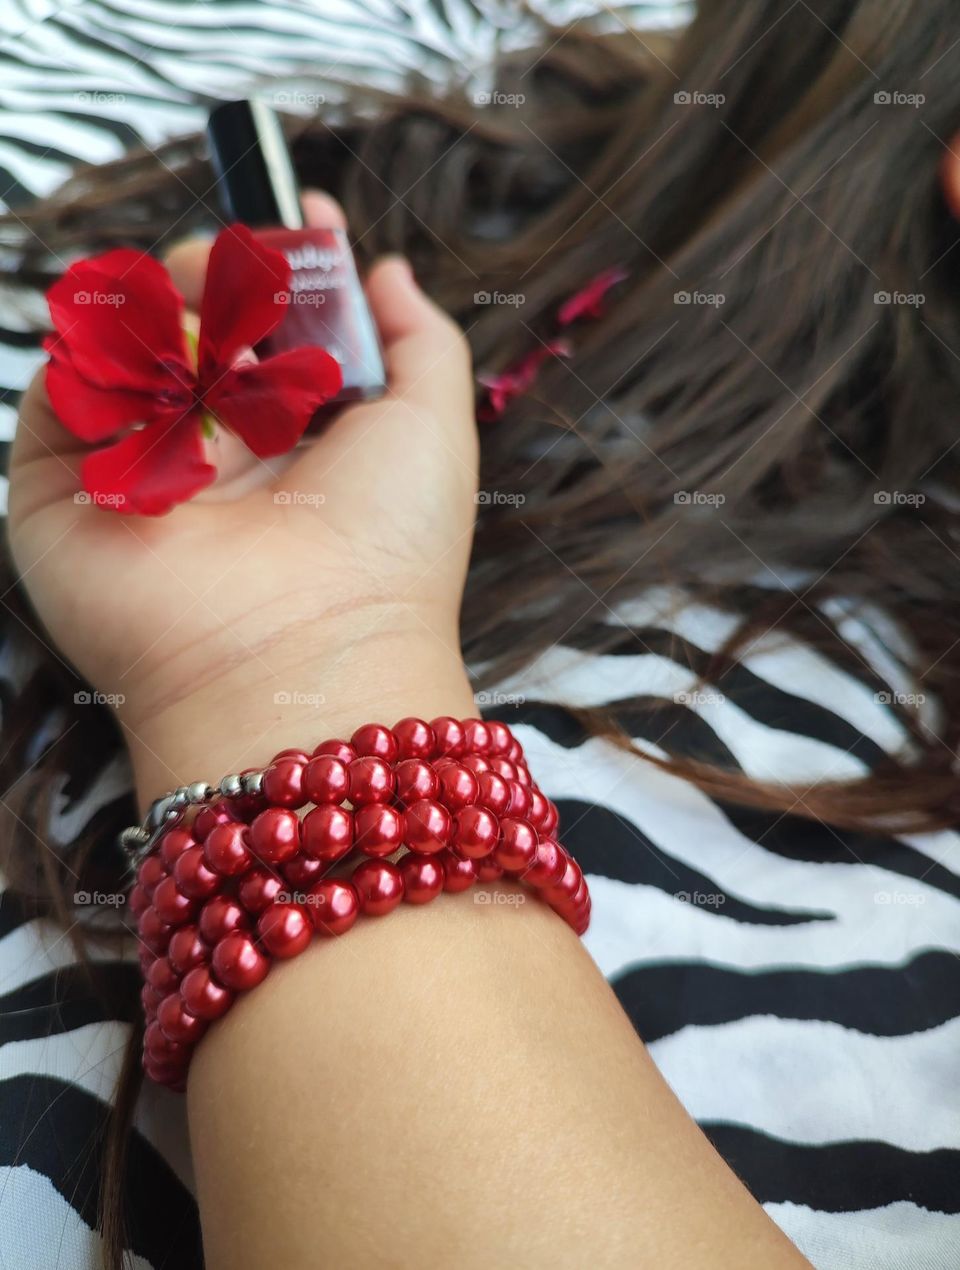 Red beaded bracelet